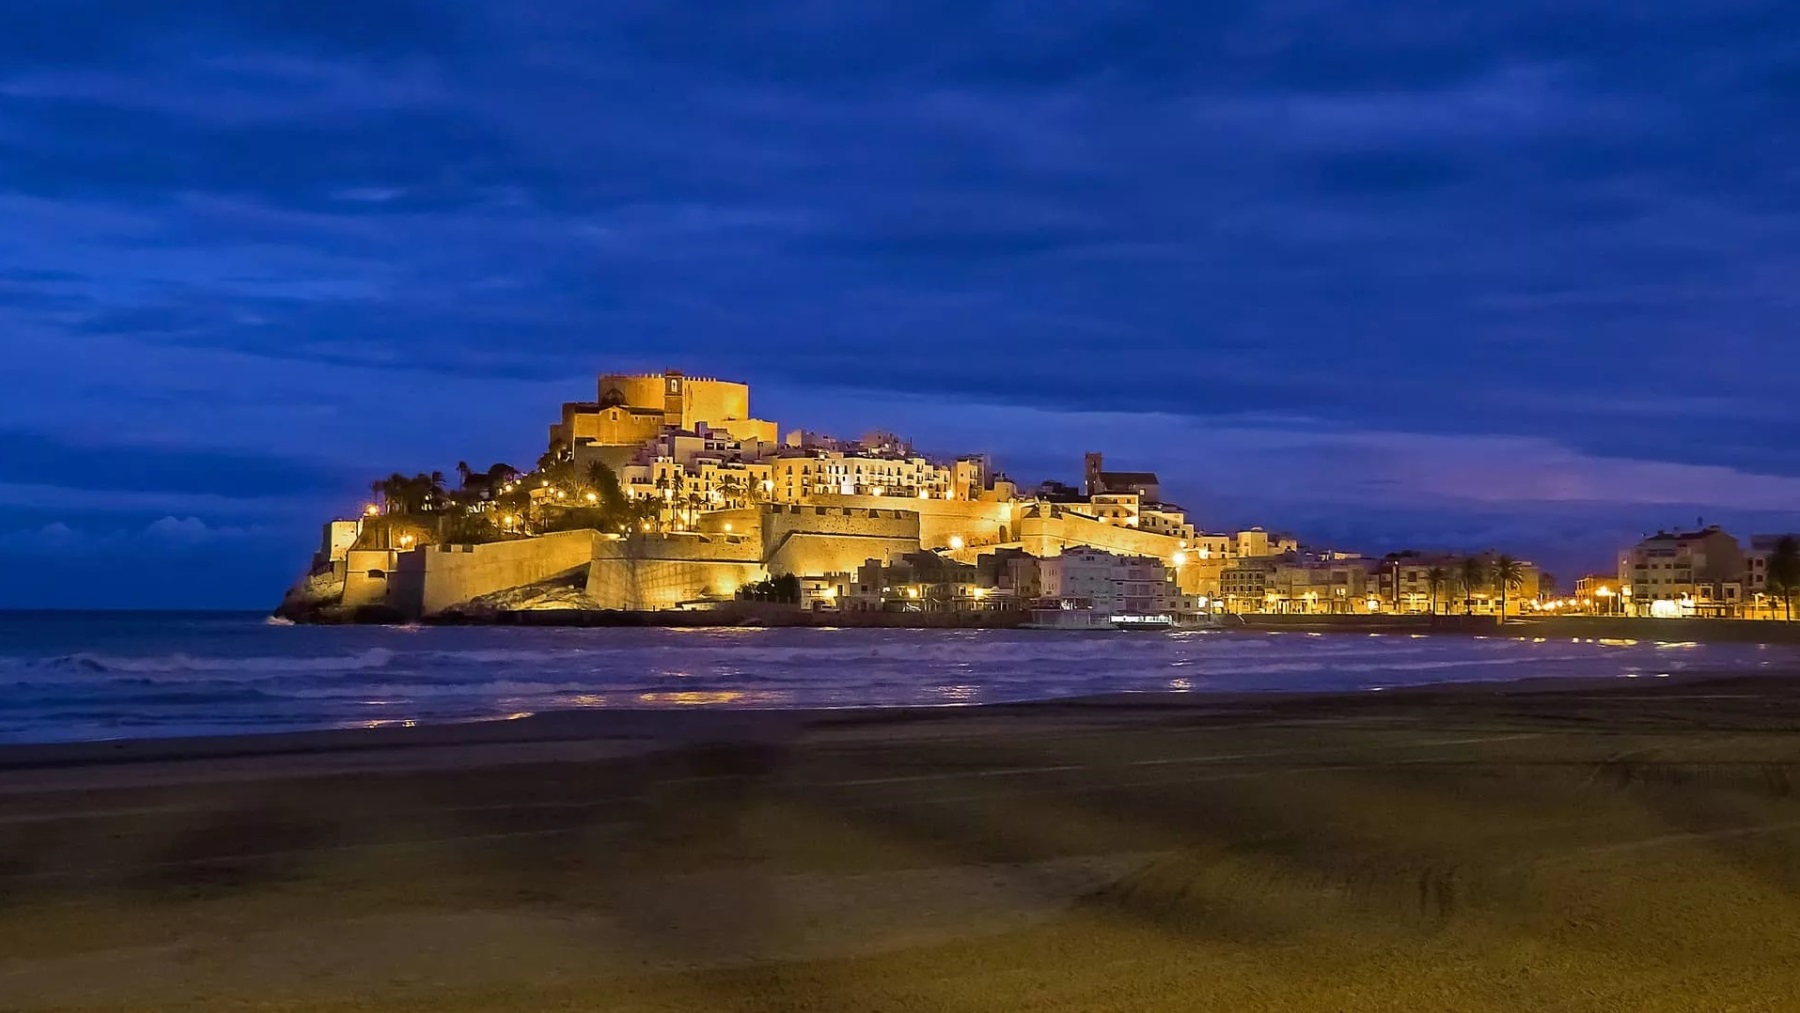 El pueblo más bonito de España para viajar en marzo según ‘National Geographic’